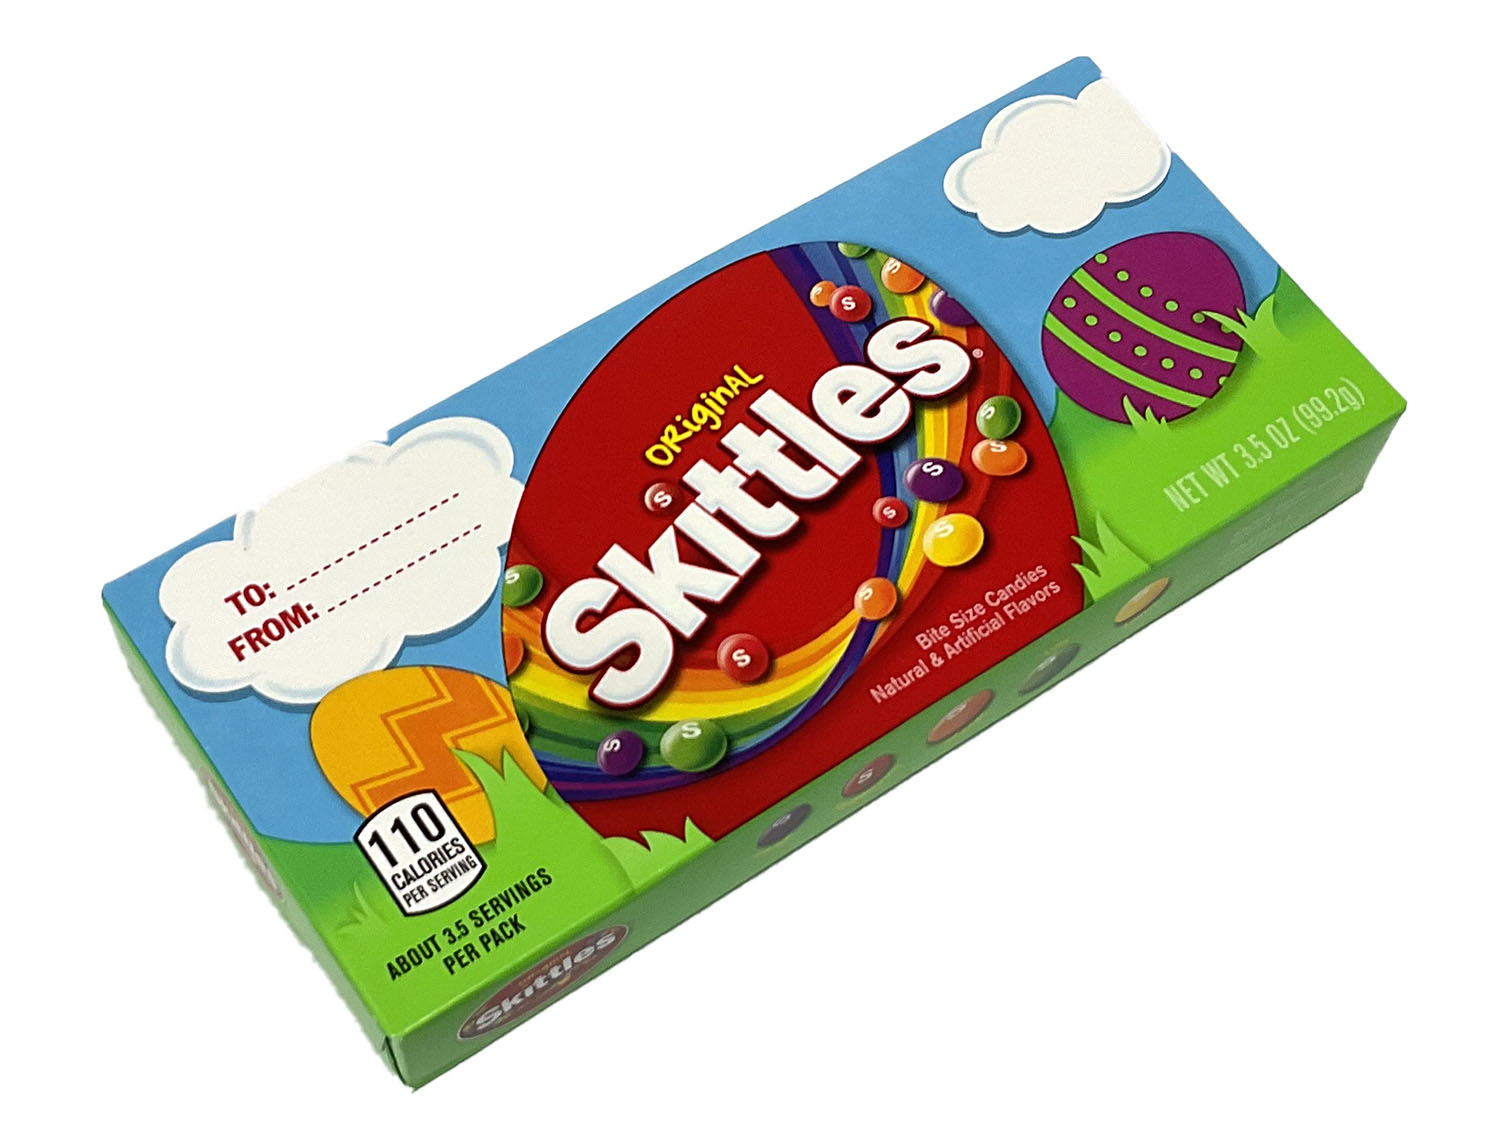 Skittles Easter Theater box - 3.5 oz